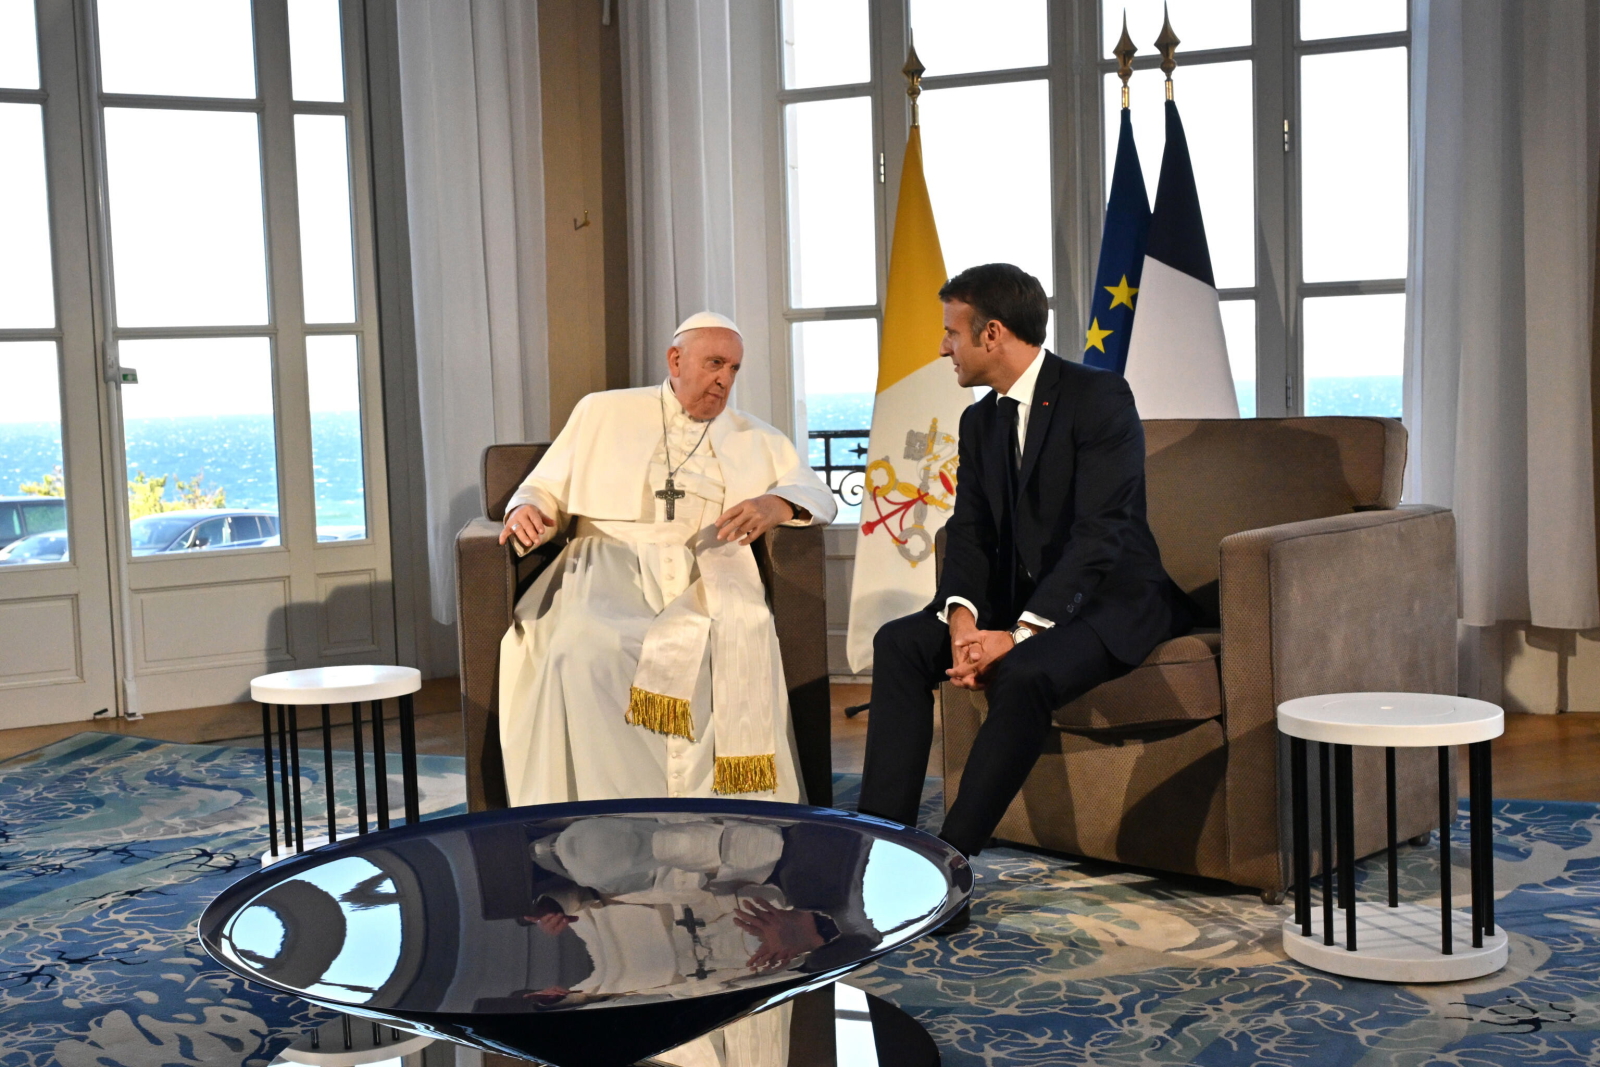 Le président Macron et le pape François ont notamment discuté de la question de la migration et de la loi sur la fin de vie.